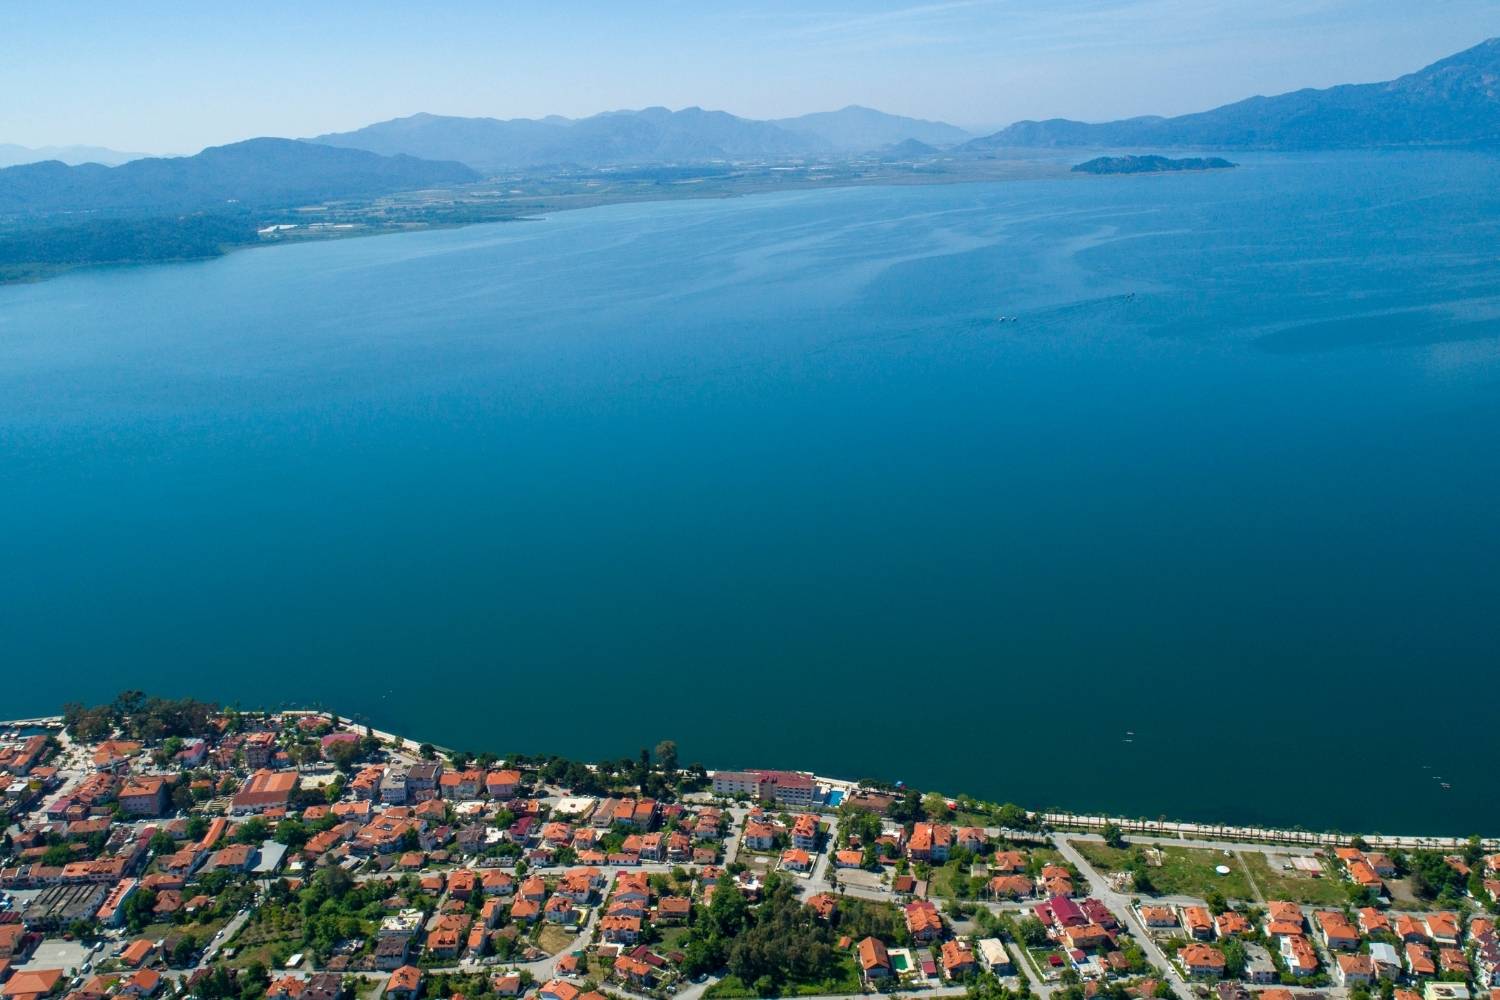 Koycegiz Town by the Lake facing Dalyan and Sultaniye Thermal Baths